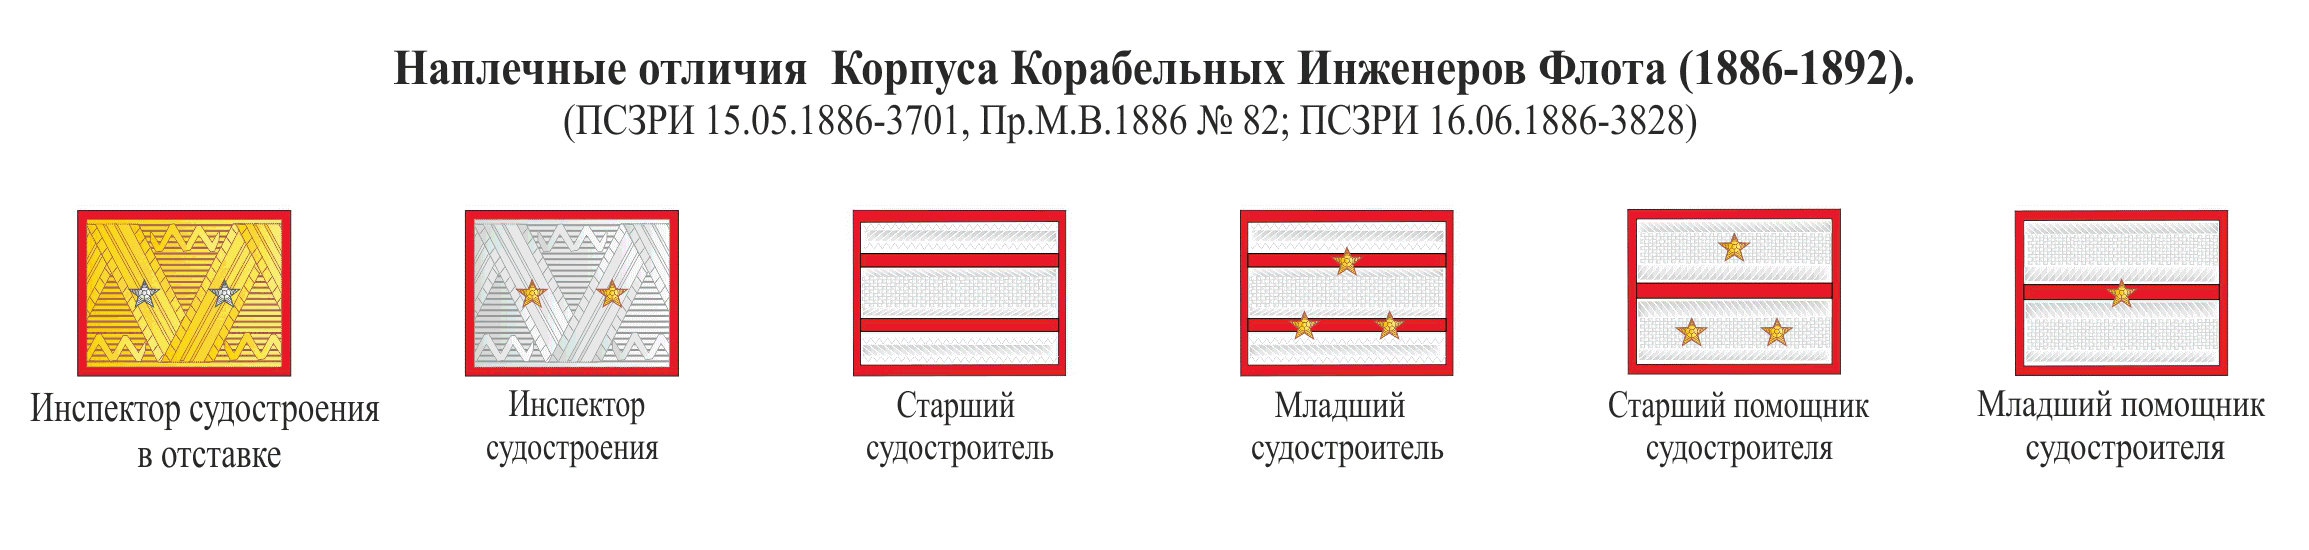 Знаки различия Российского Императорского Флота 